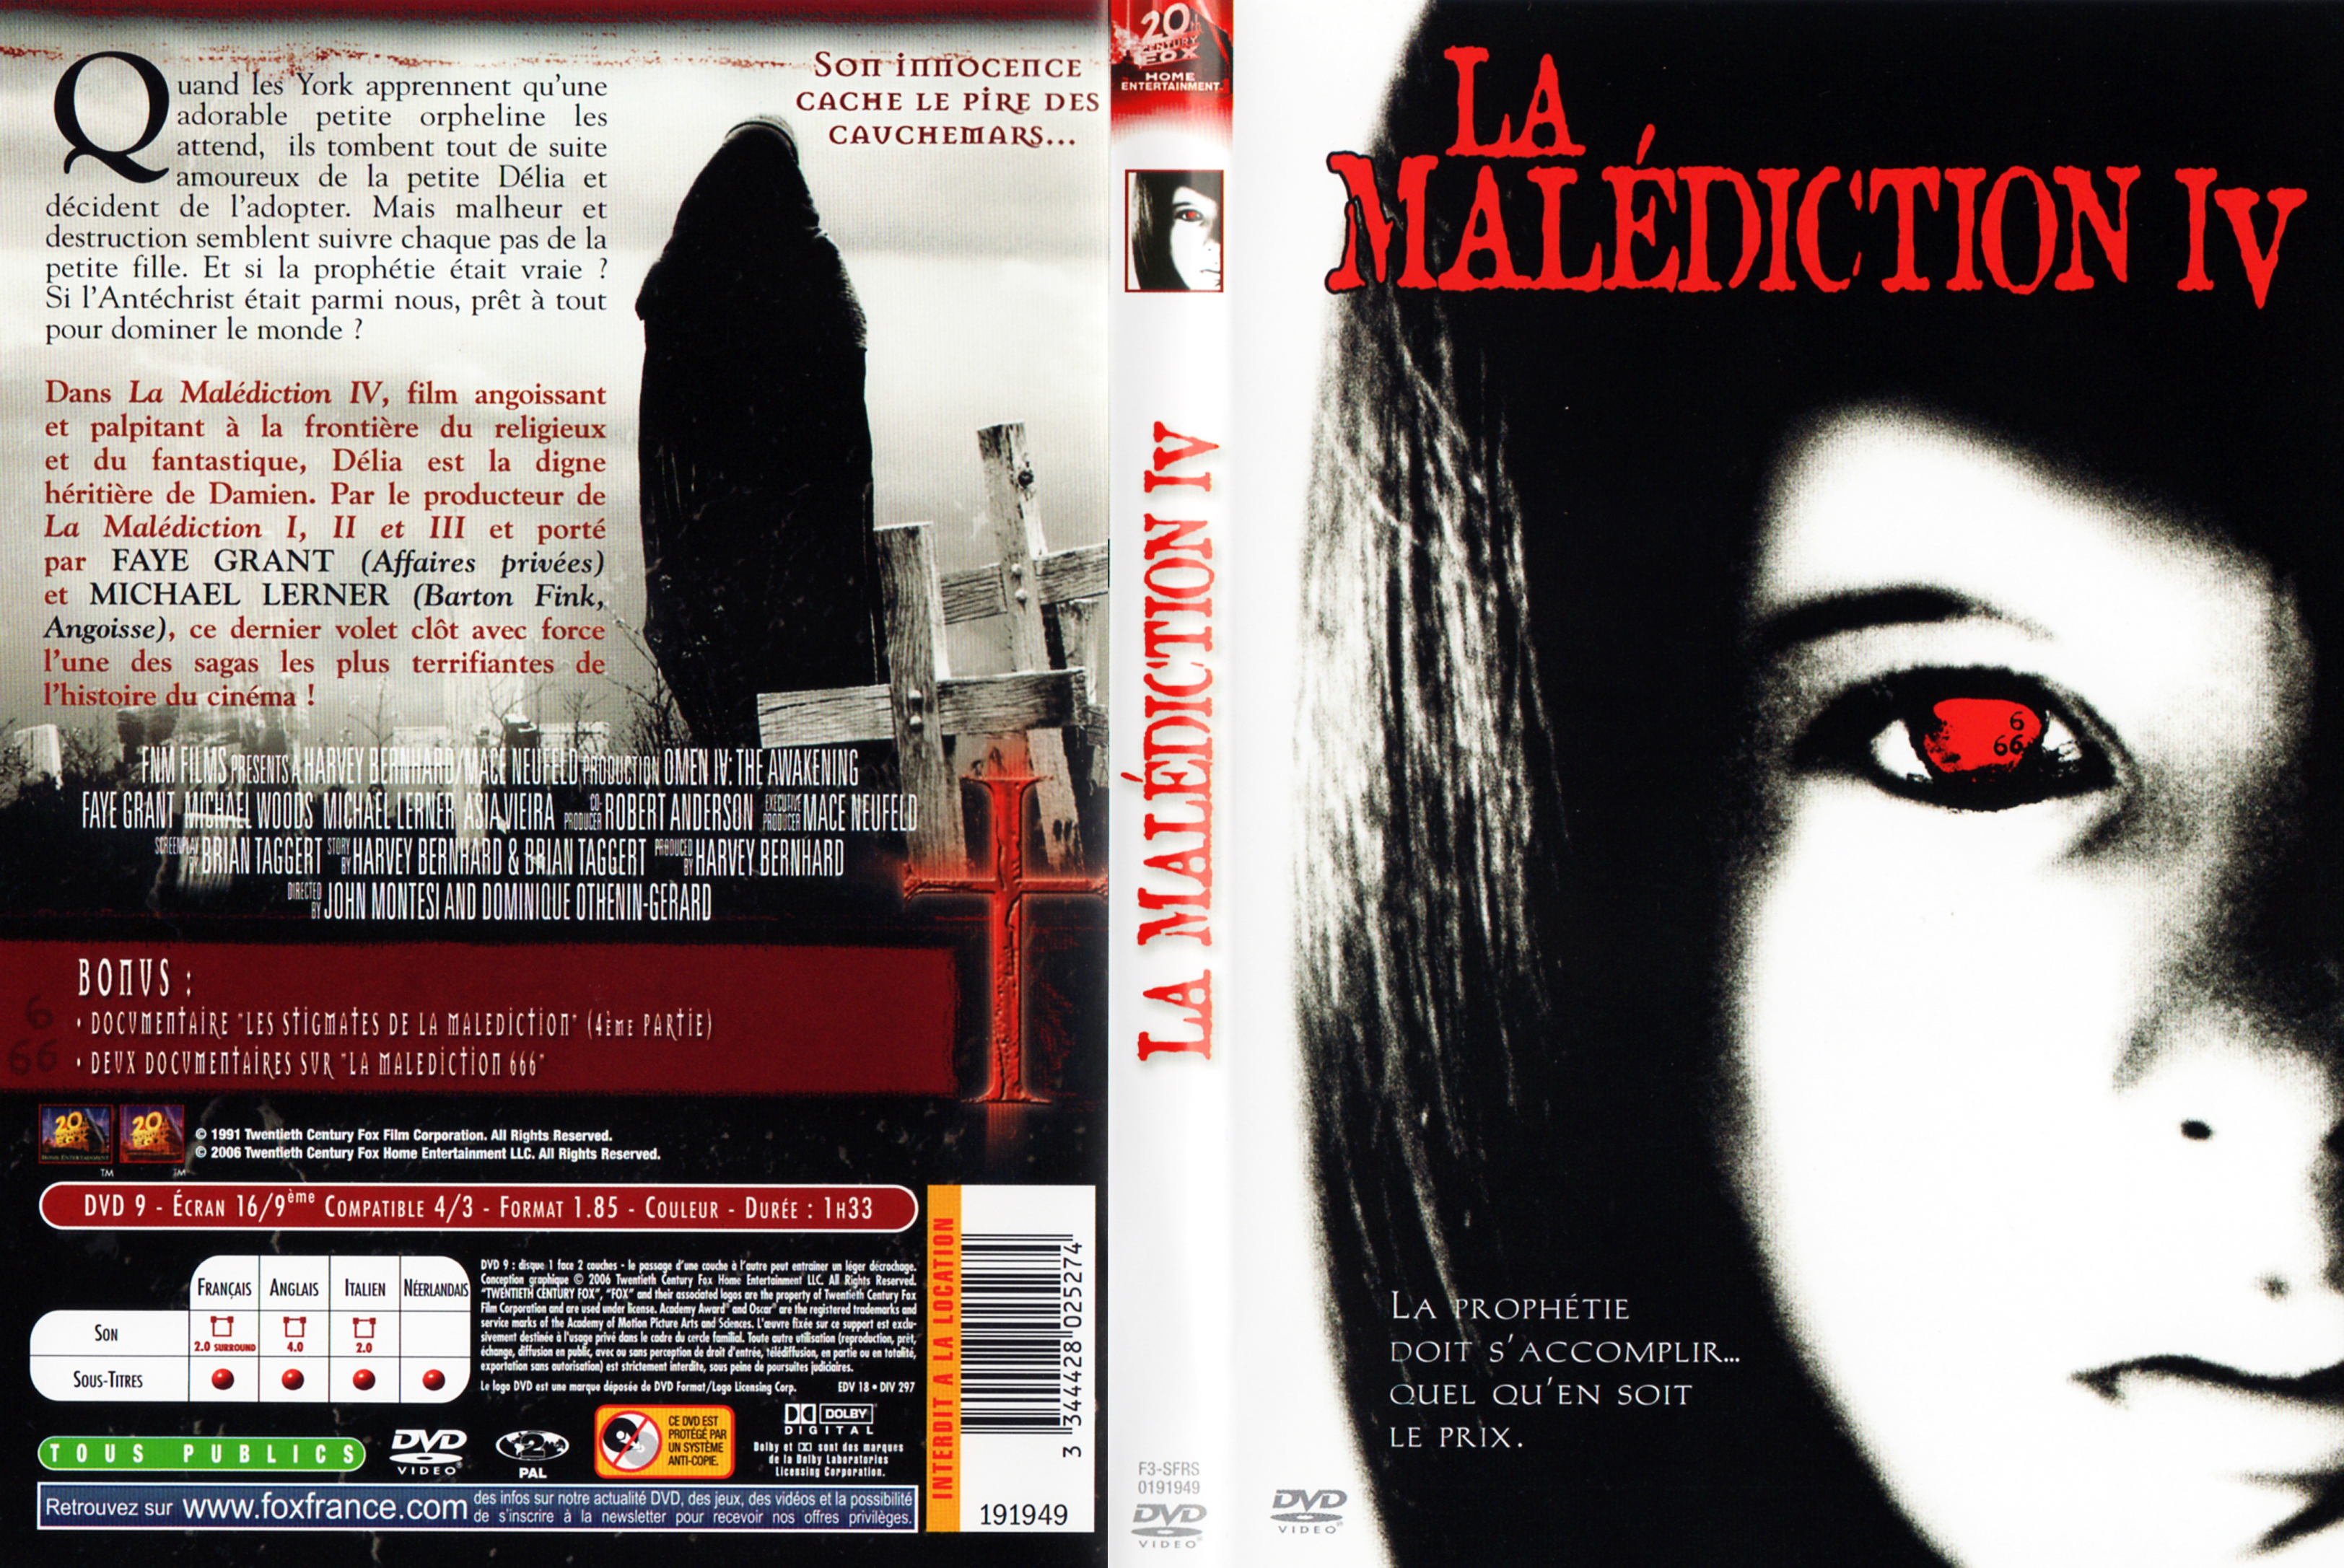 Jaquette DVD La maldiction 4 v2